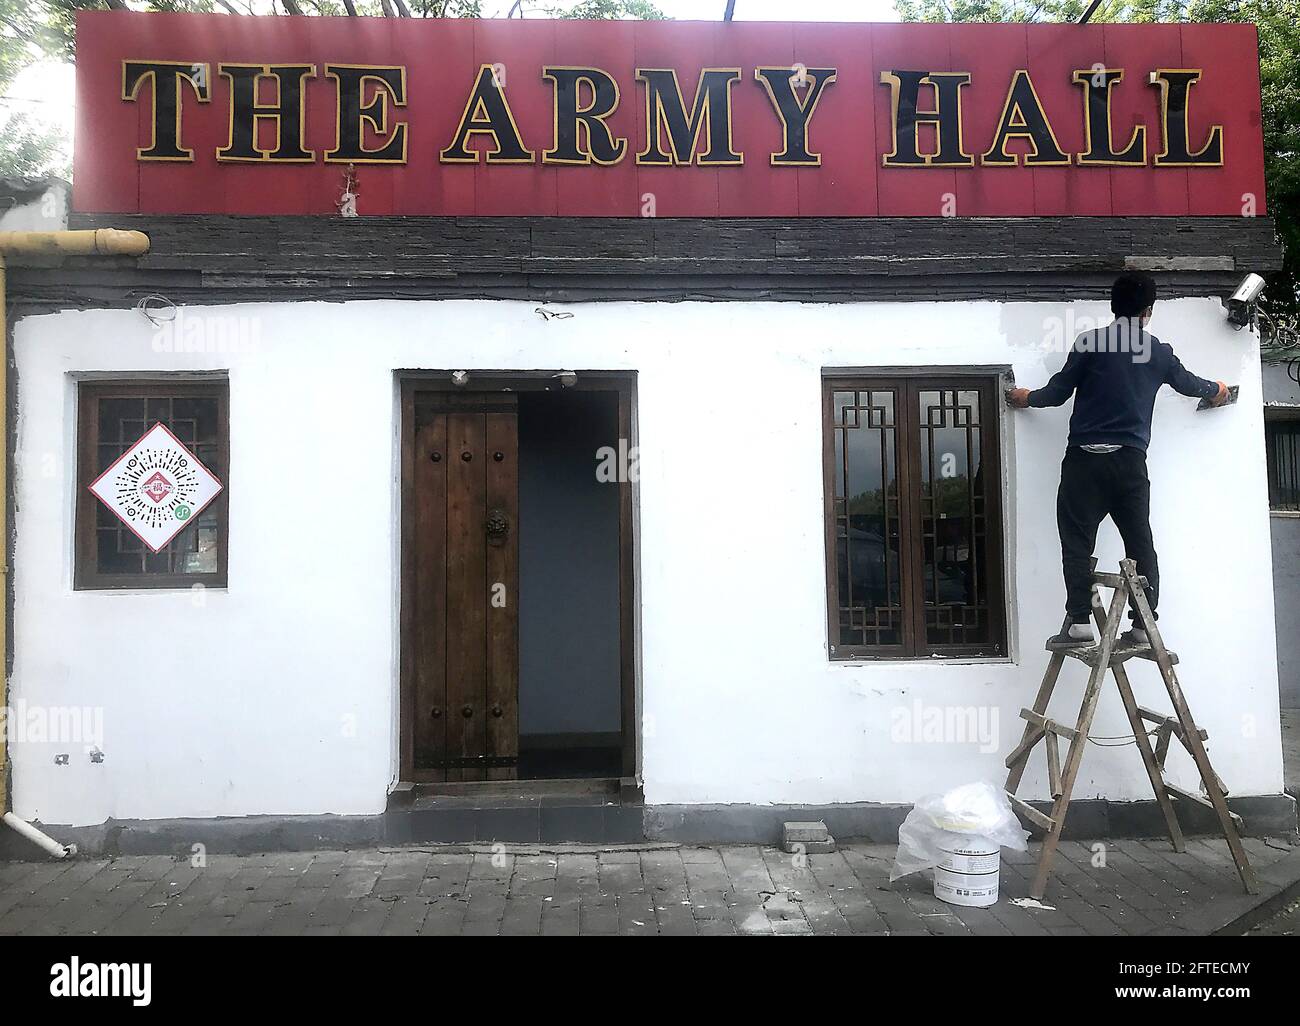 Pechino, Cina. 21 Maggio 2021. Un proprietario di bar lavora sulla parte anteriore del suo bar "The Army Hall", di prossima apertura, che presenta una nostalgia militare cinese all'interno di Pechino venerdì 21 maggio 2021. Il settore dell'ospitalità della capitale si è riaperto rapidamente dopo la chiusura del Covid-19 lo scorso anno, con ristoranti e bar riaperti senza necessità di mascherare o di distanza. Foto di Stephen Shaver/UPI. Credit: UPI/Alamy Live News Foto Stock